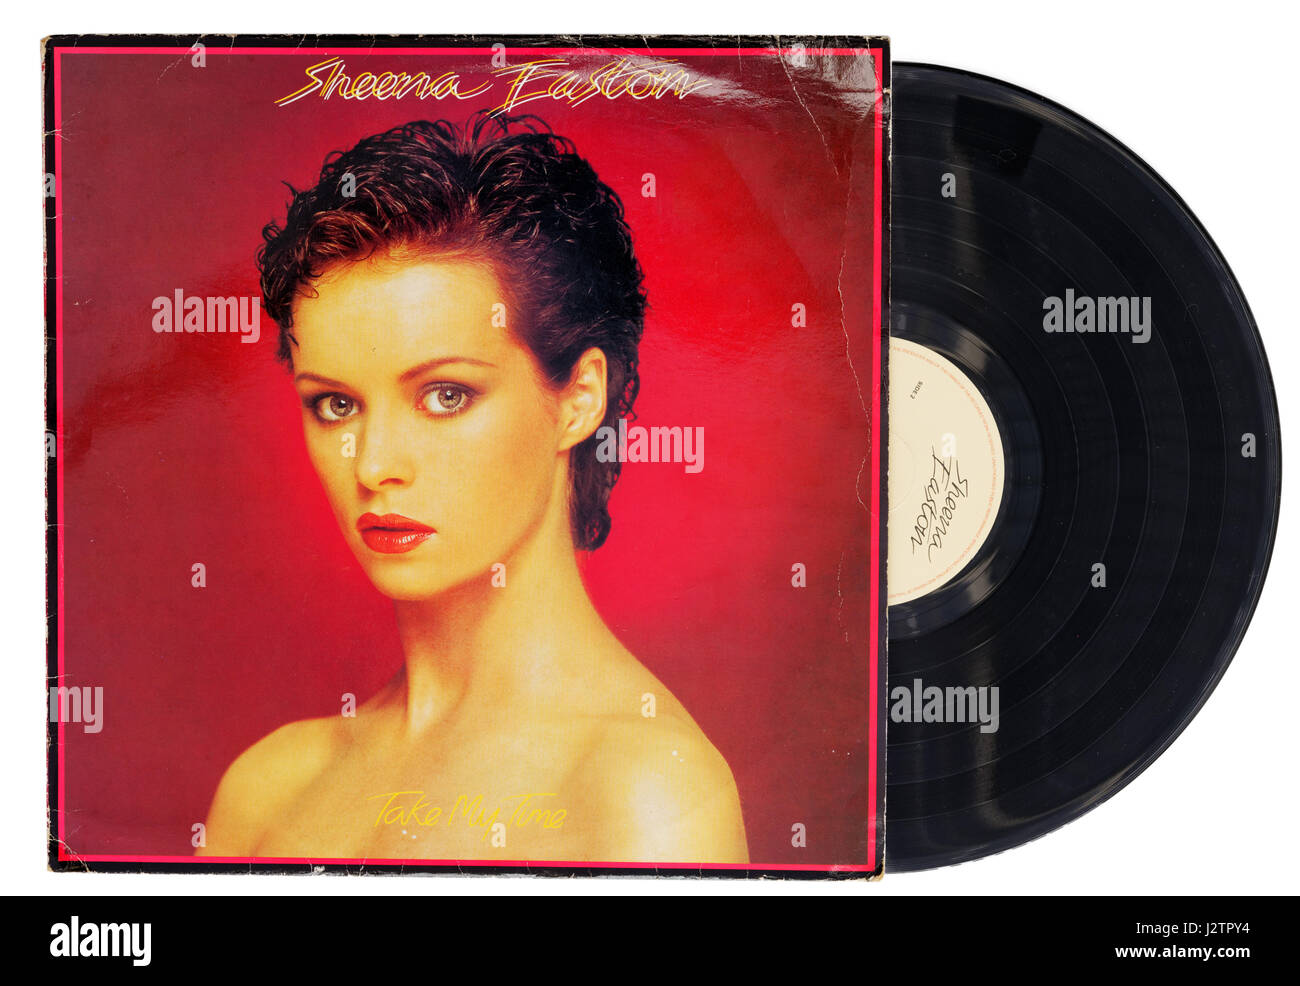 Sheena Easton Take My Time vinyl record Stock Photo